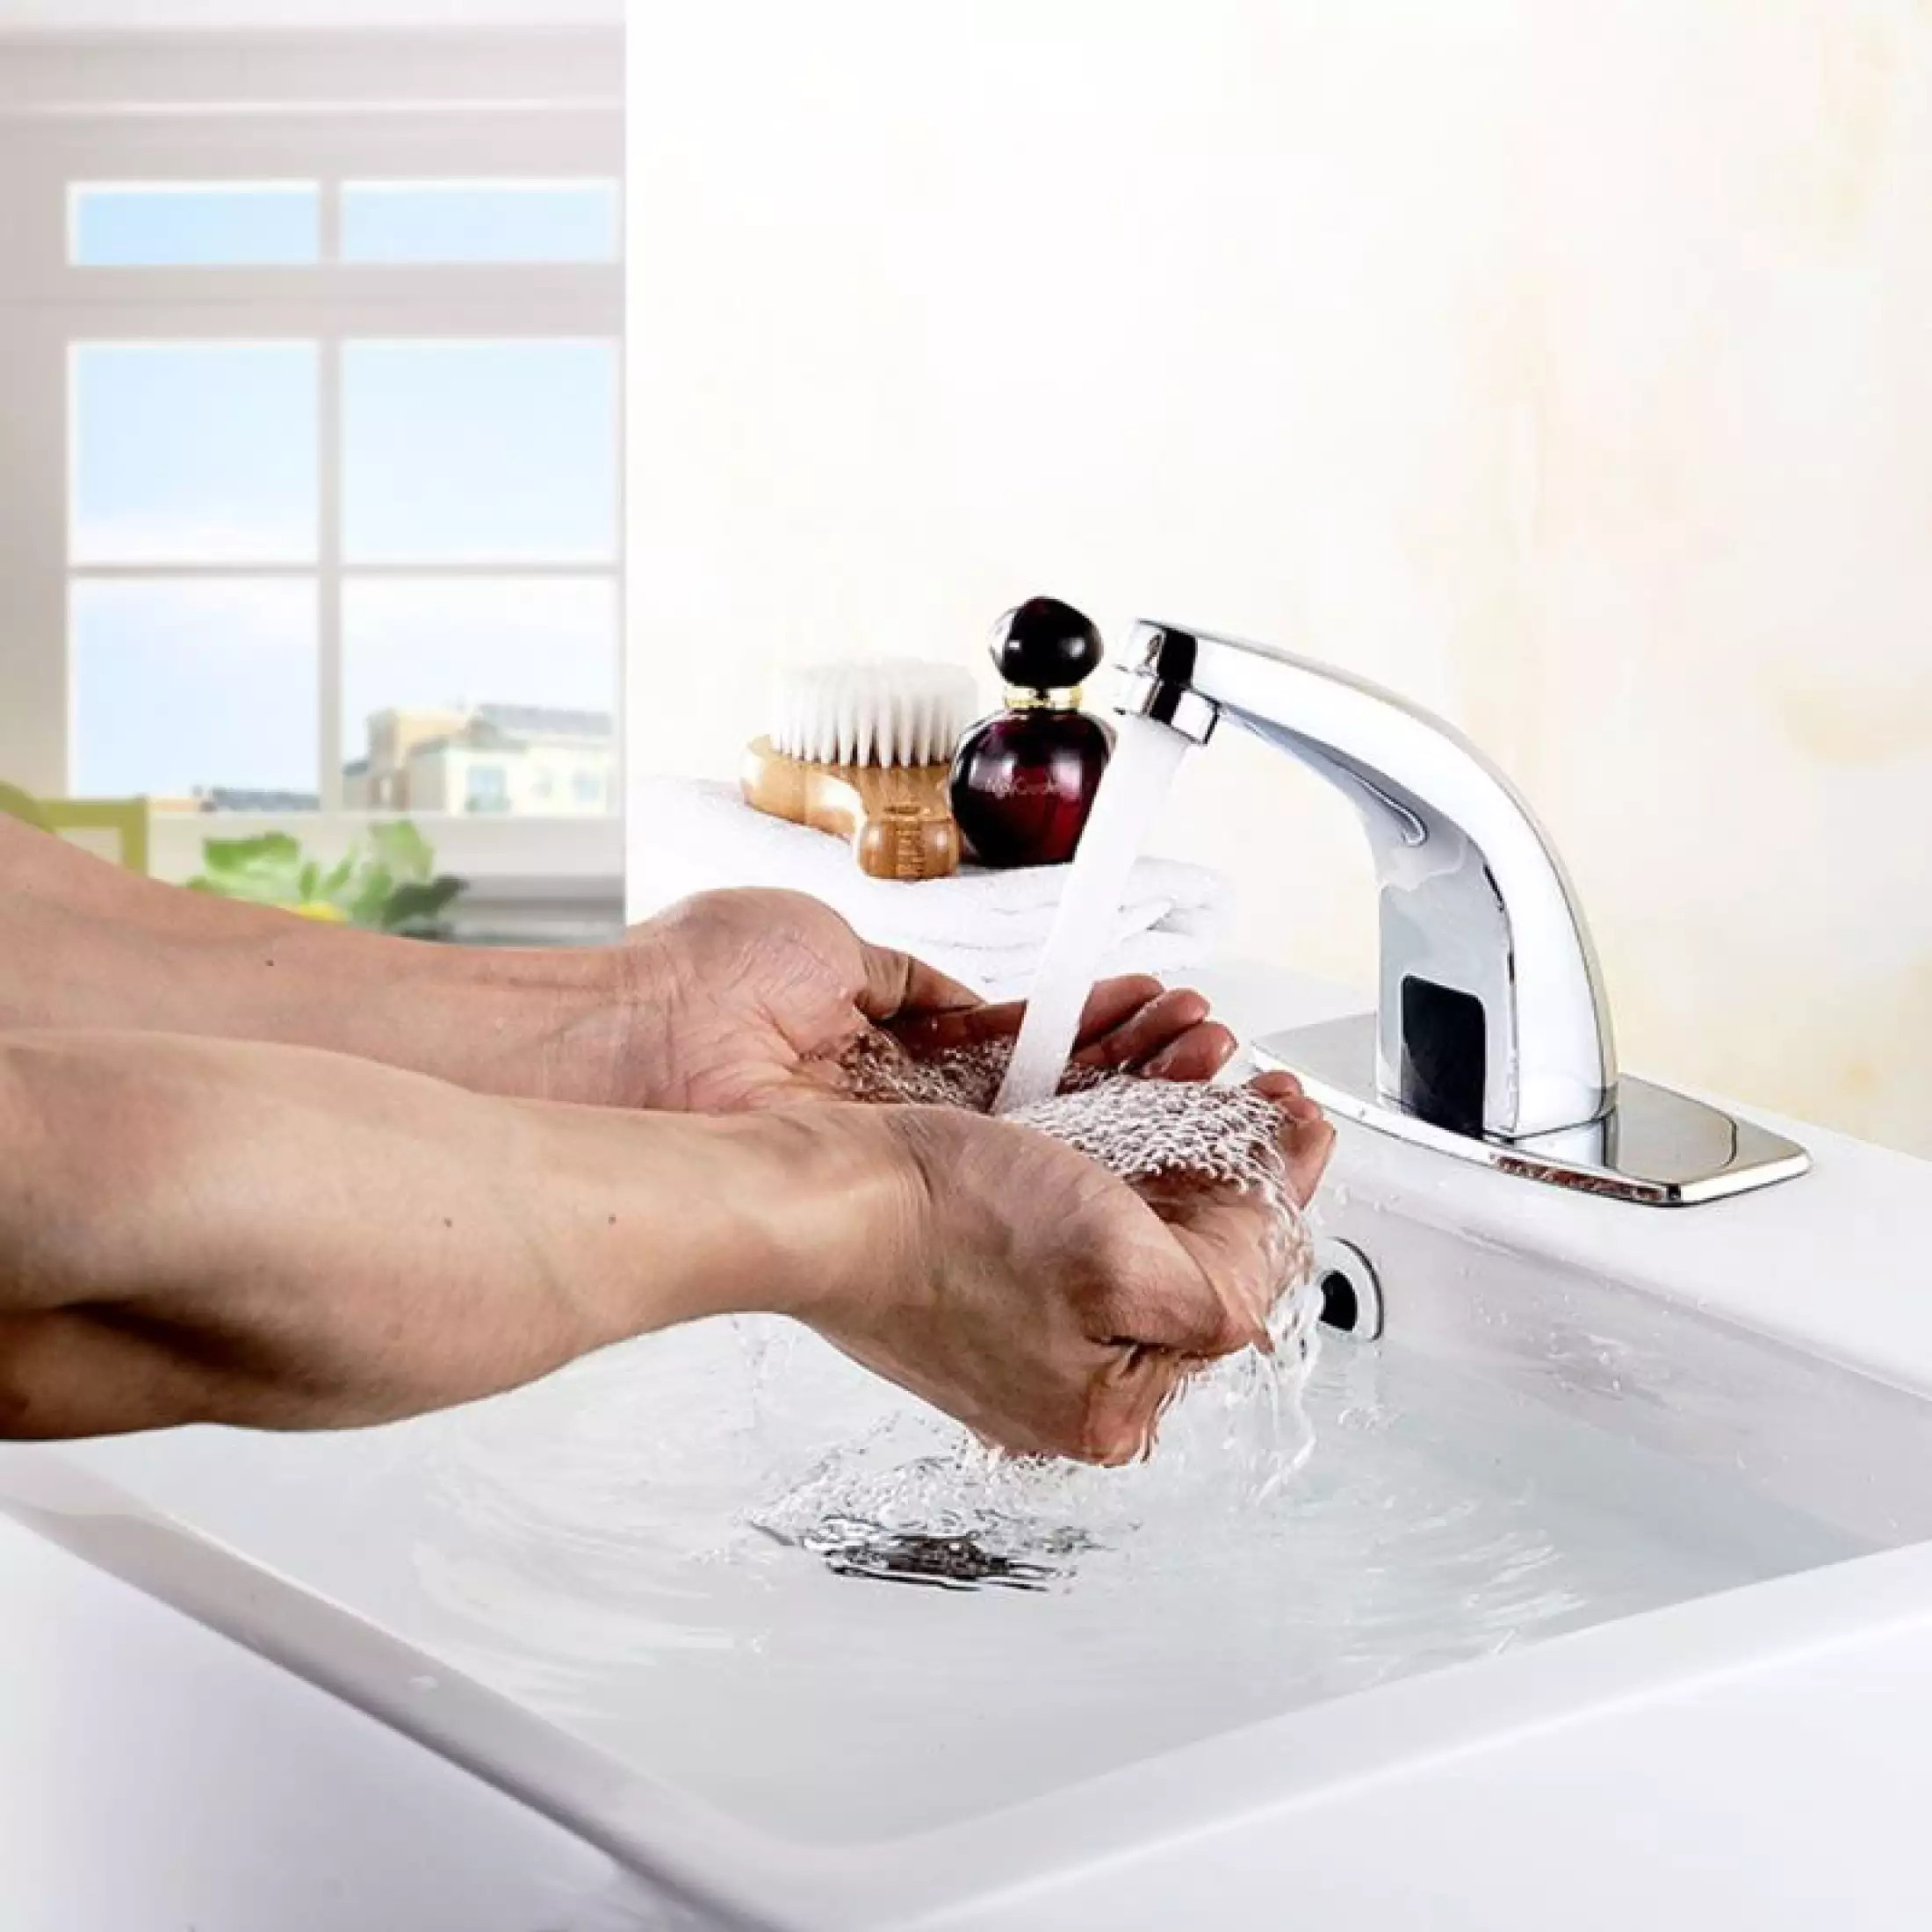 Thiết kế vòi rửa tay cảm ứng hiện đại góp phần sang trọng cho nhà bạn